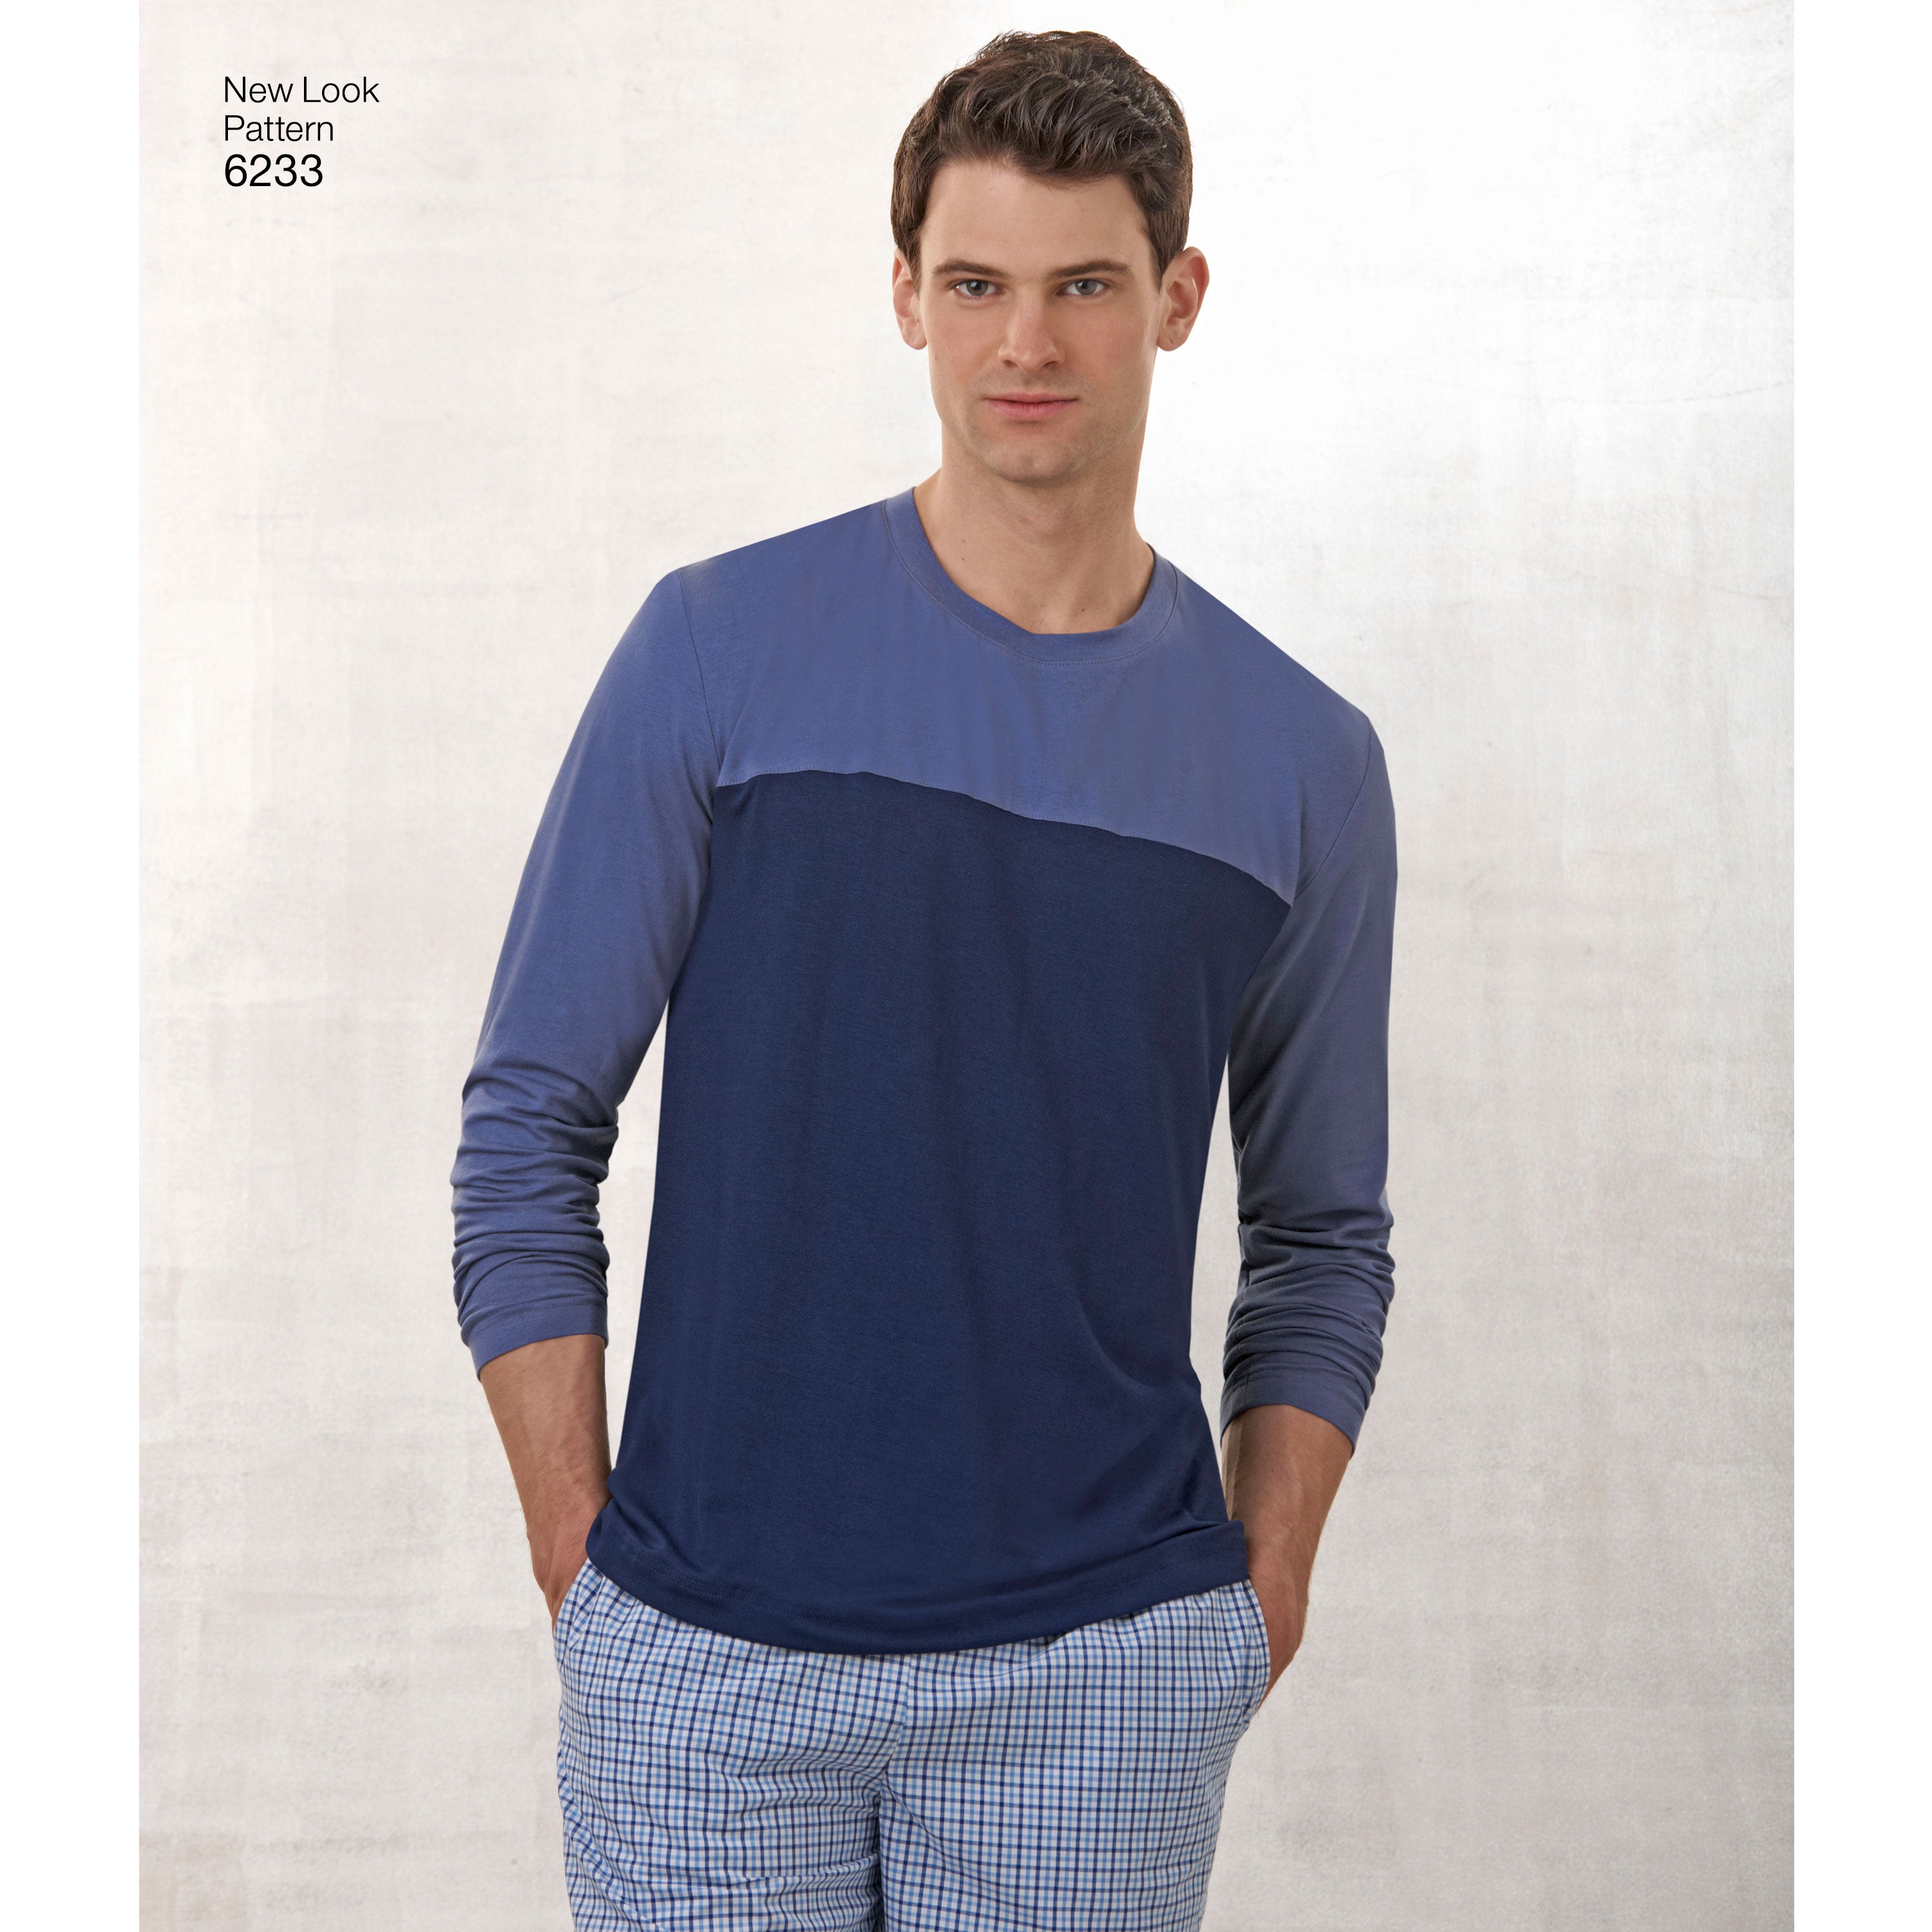 New Look Unisex Loungewear/Nightwear 6233